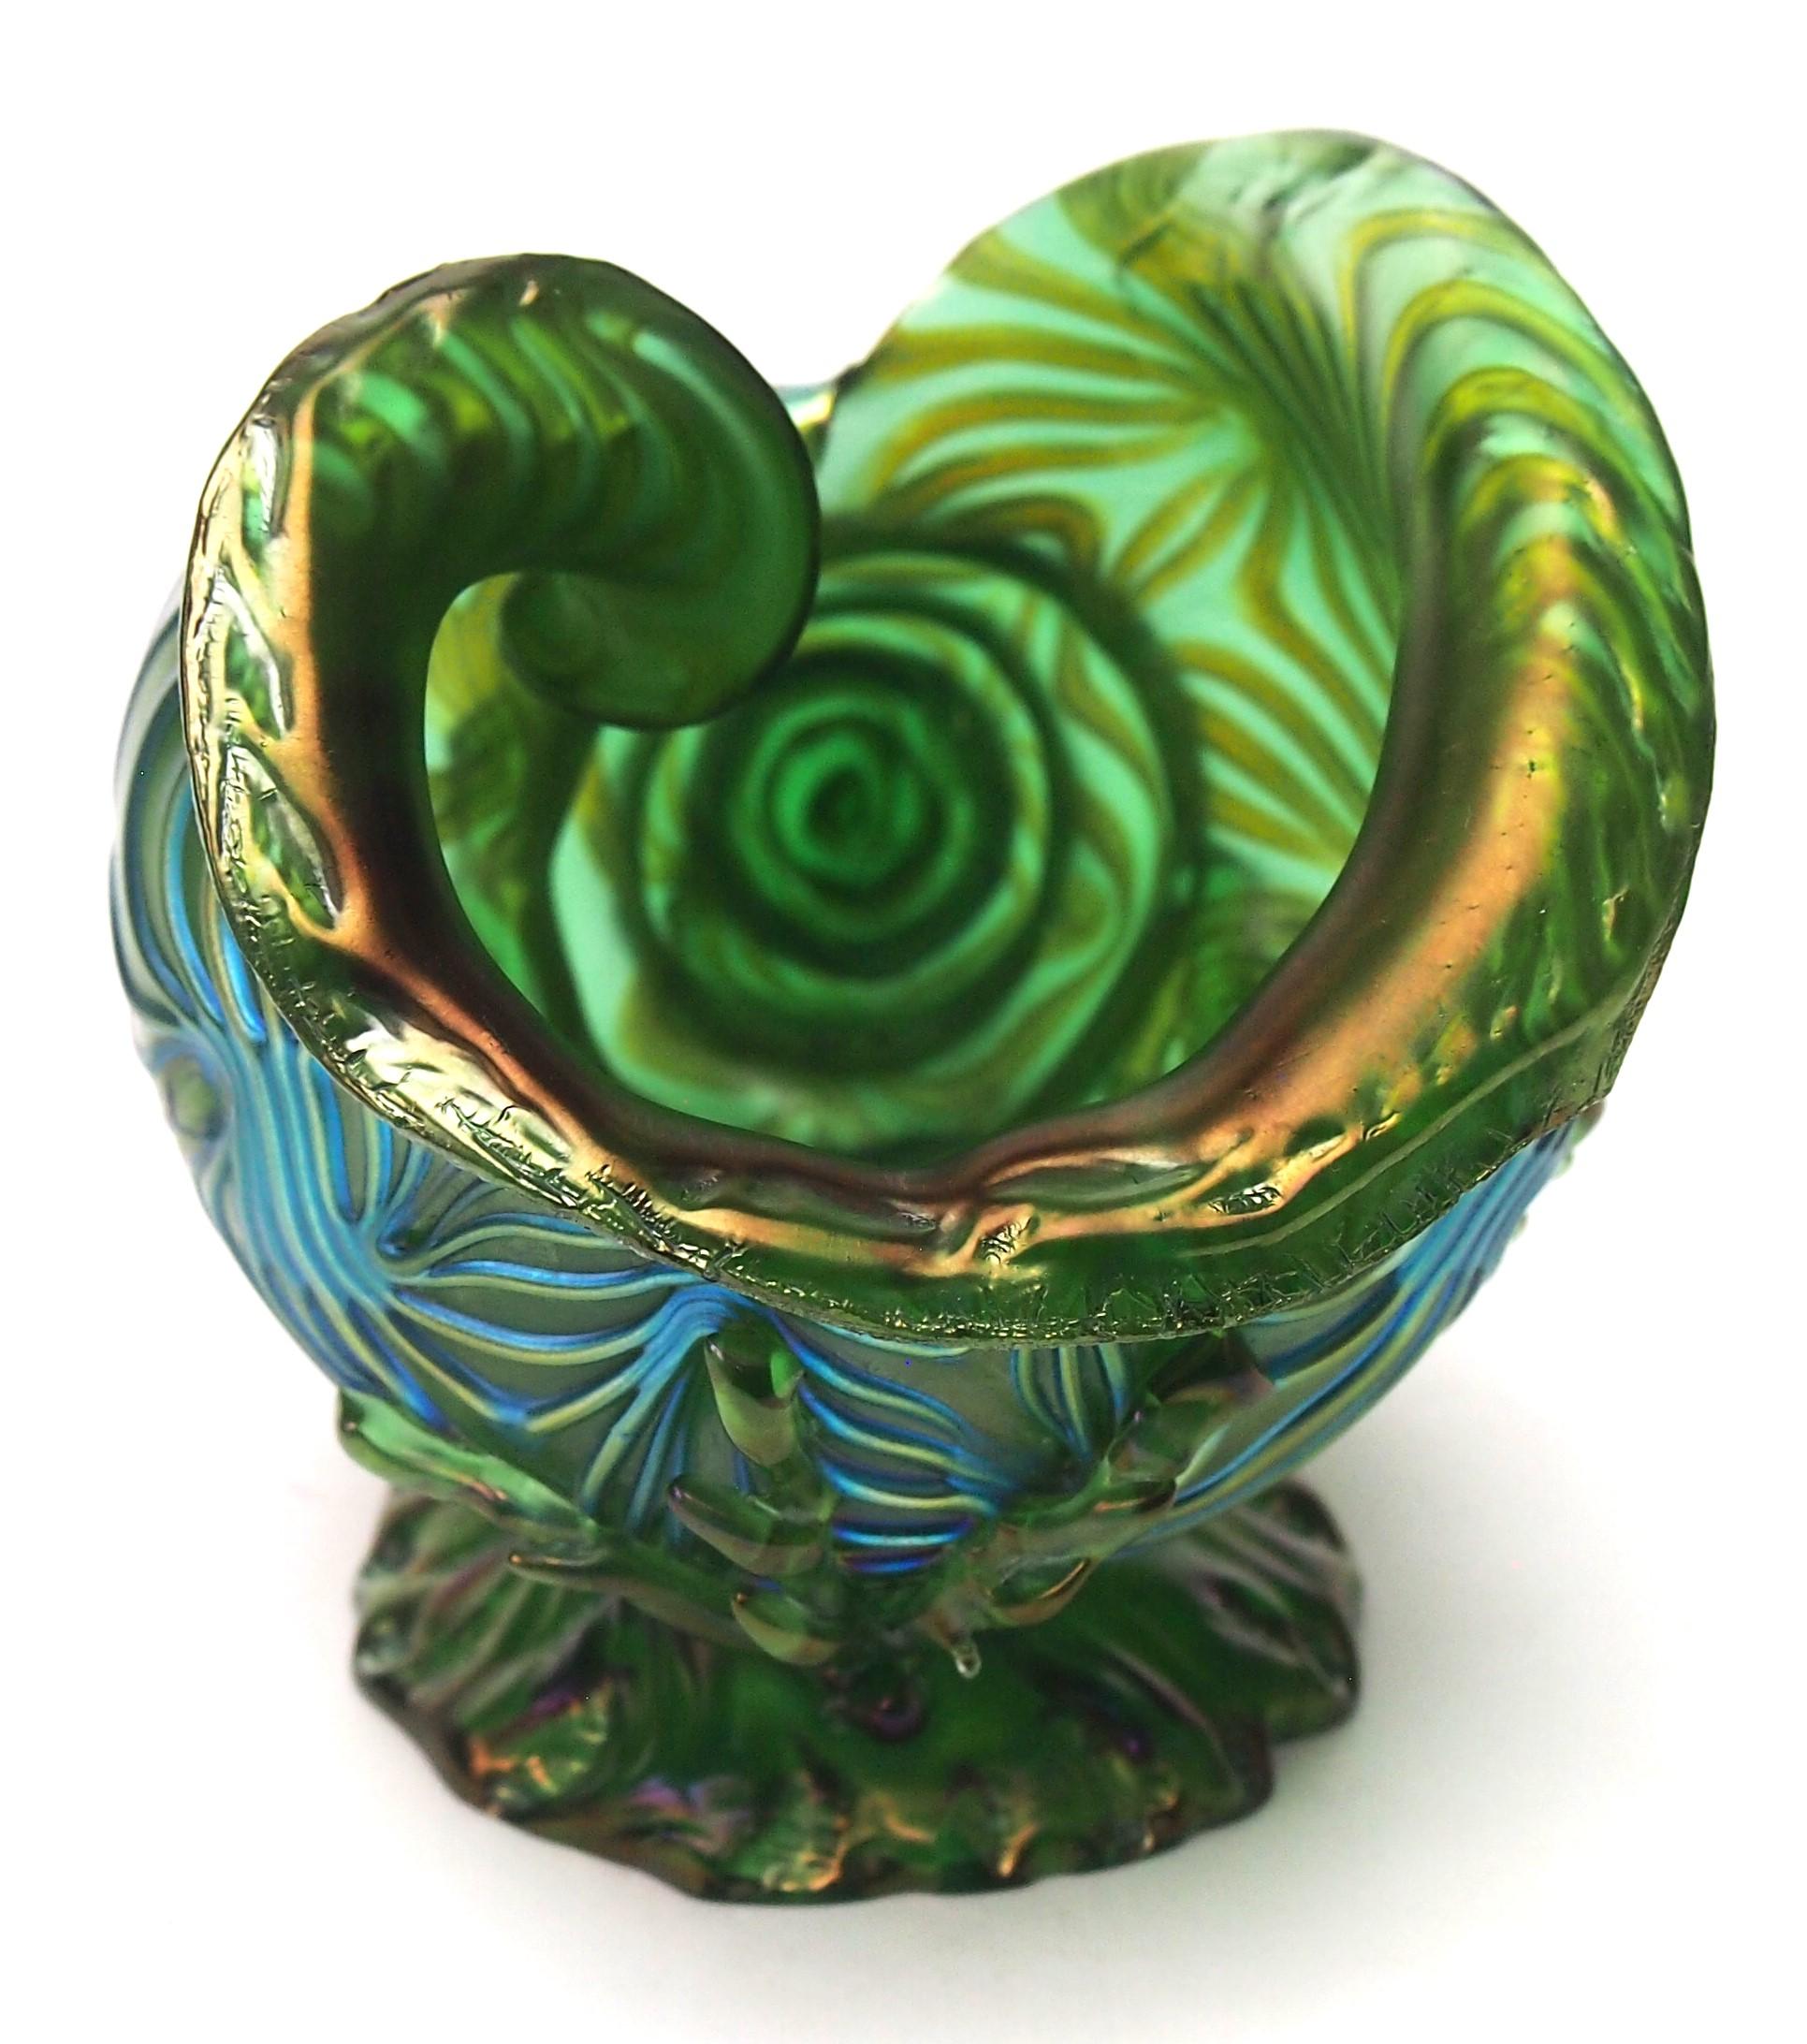 Vase Loetz en coquillage Design/One, vert avec des reflets bleus ; un effet conçu pour ressembler à des vagues - d'où le nom. Le coquillage spiralé semble résider sur un affleurement rocheux 